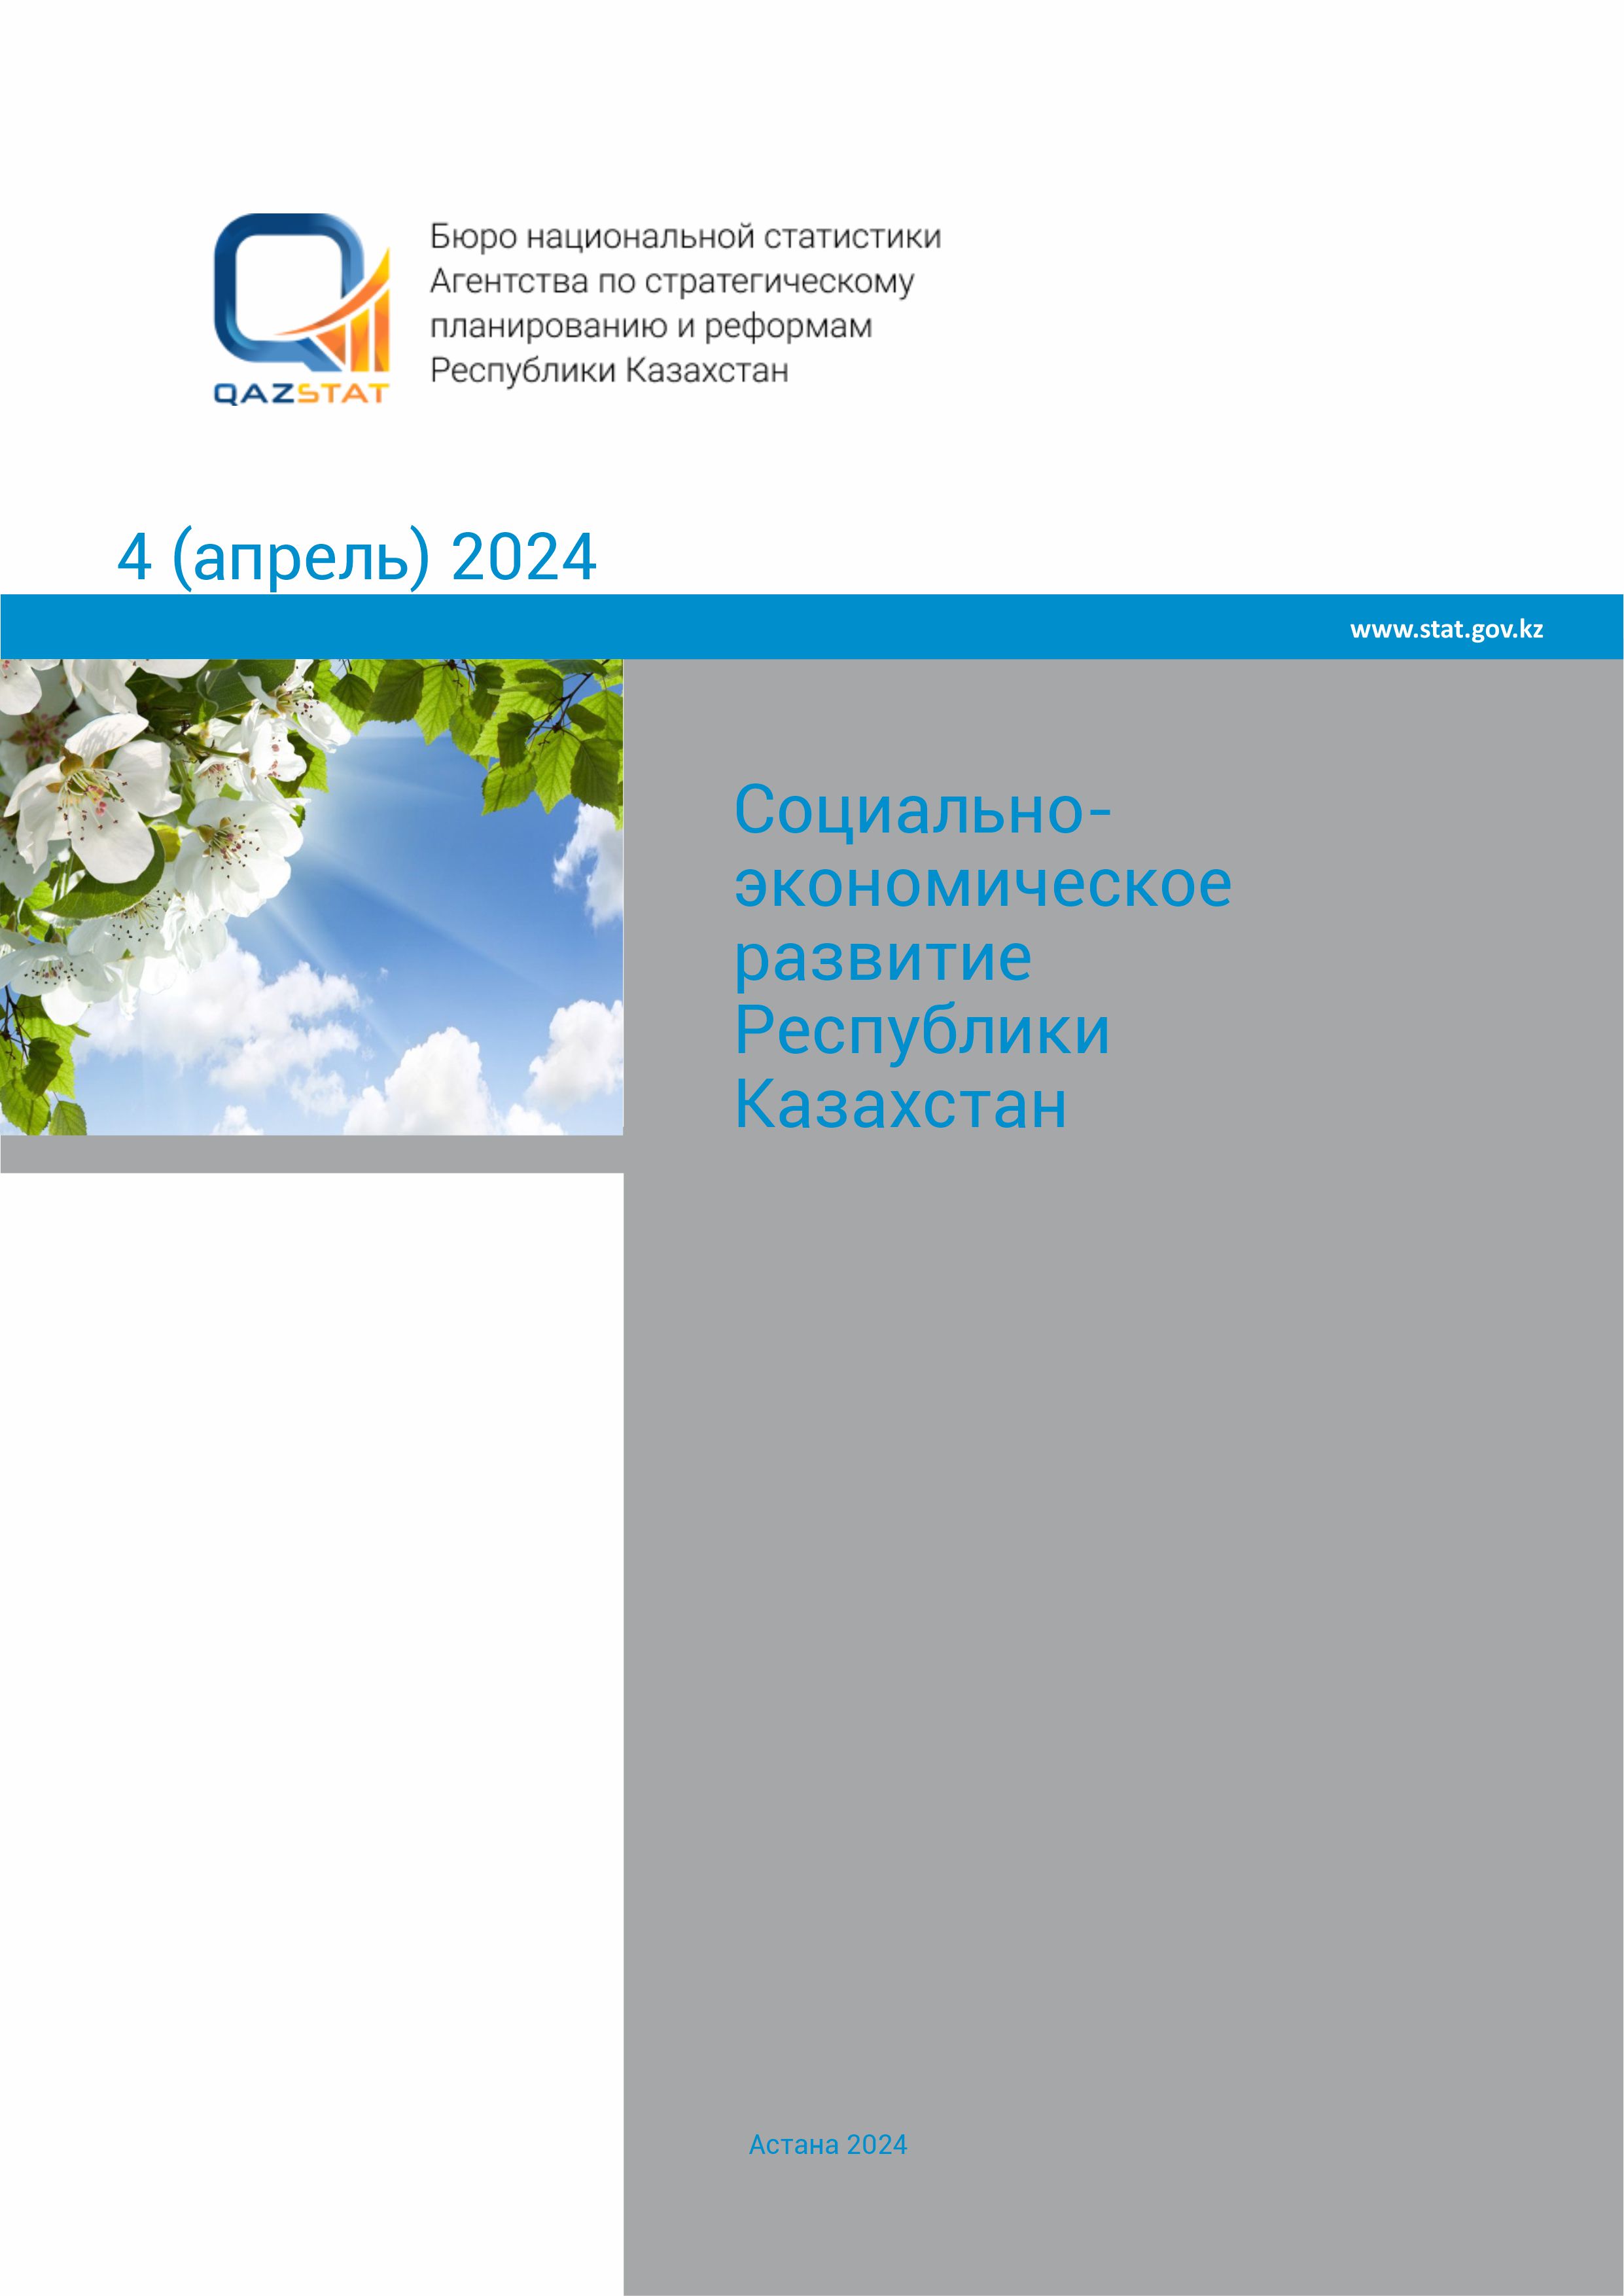 Социально-экономическое развитие Республики Казахстан